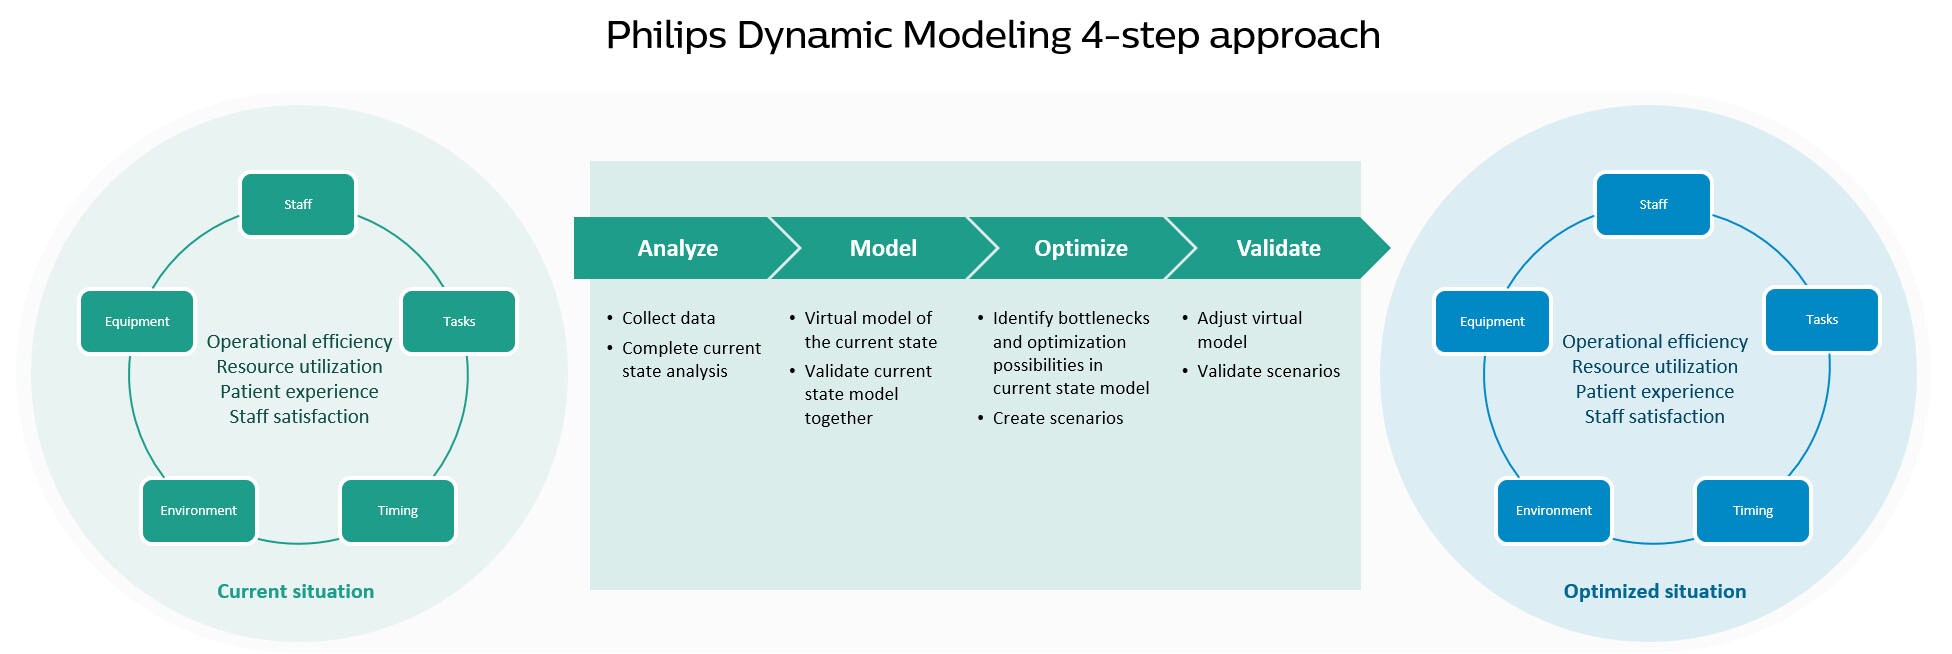 dynamic modeling DM step extensive download image